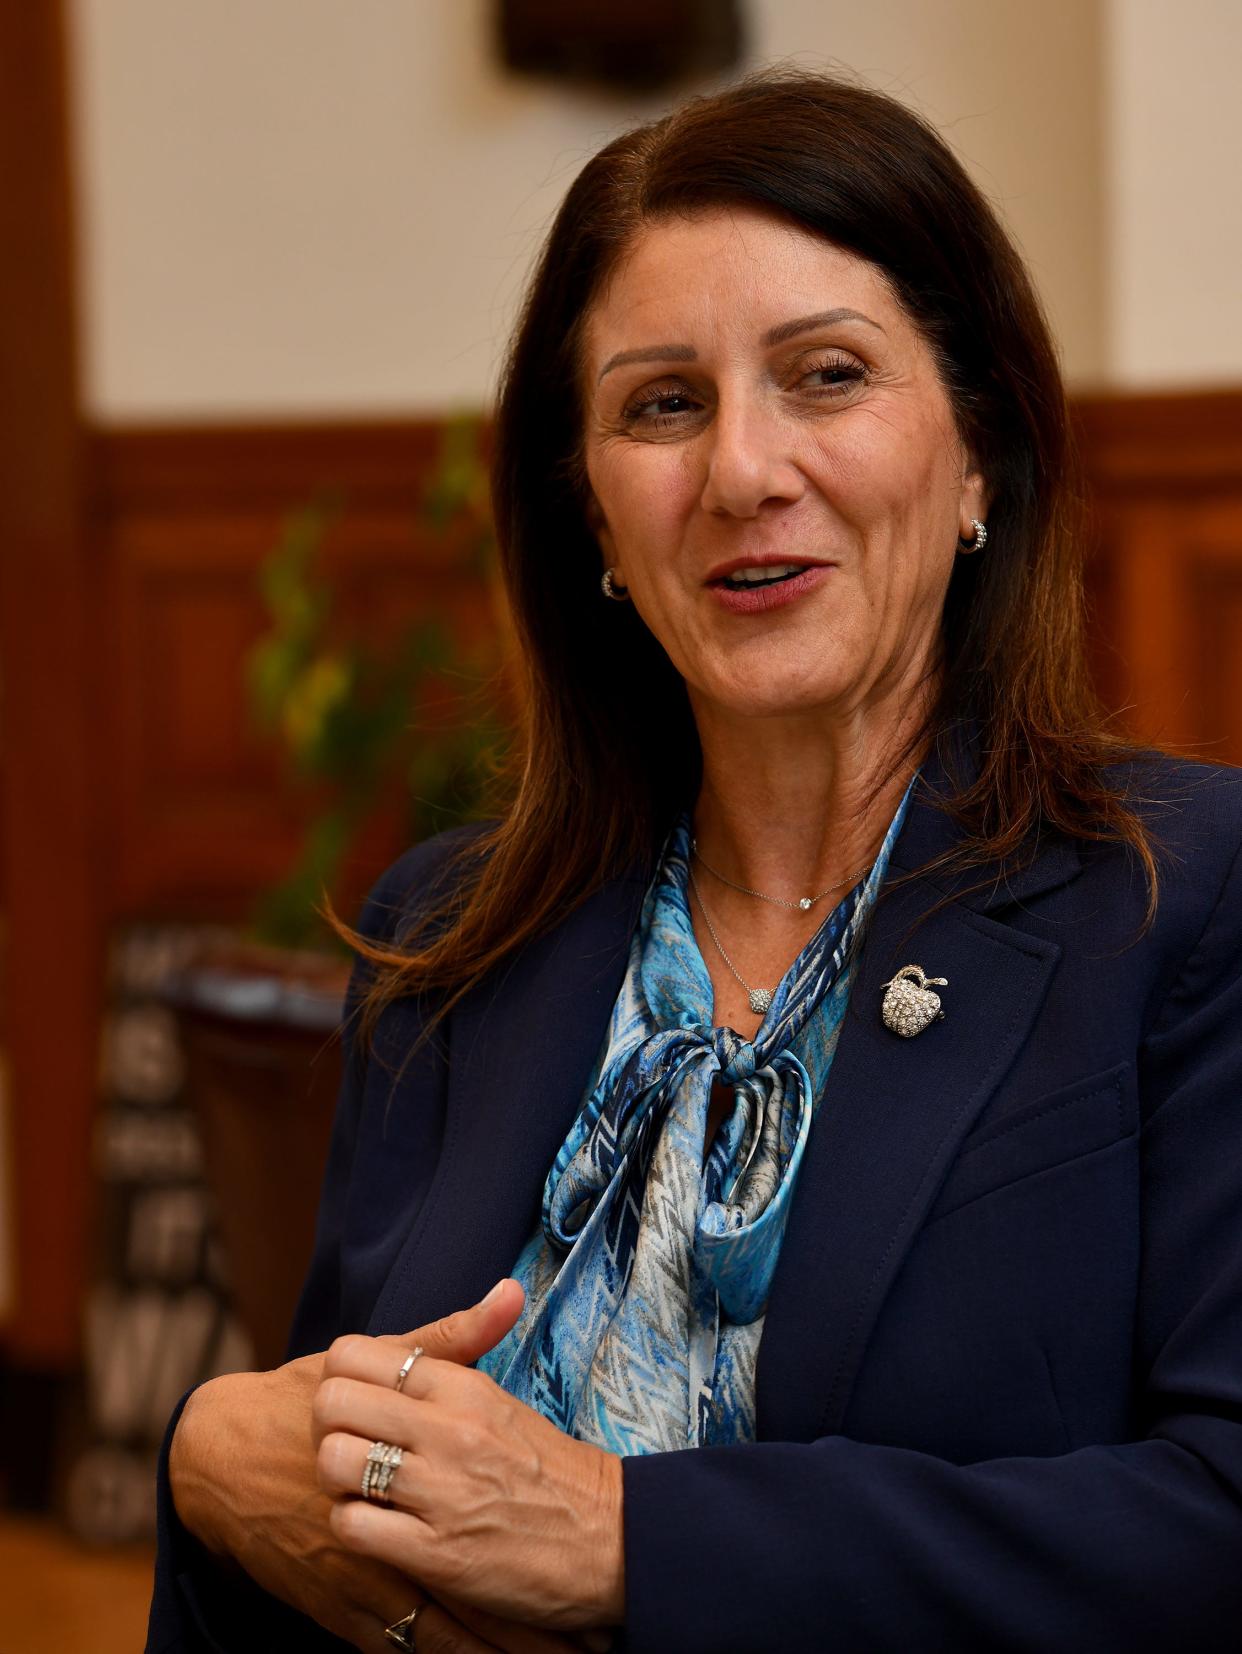 Worcester Superintendent Rachel H. Monárrez unveils a strategic plan for Worcester Public Schools over the next five years